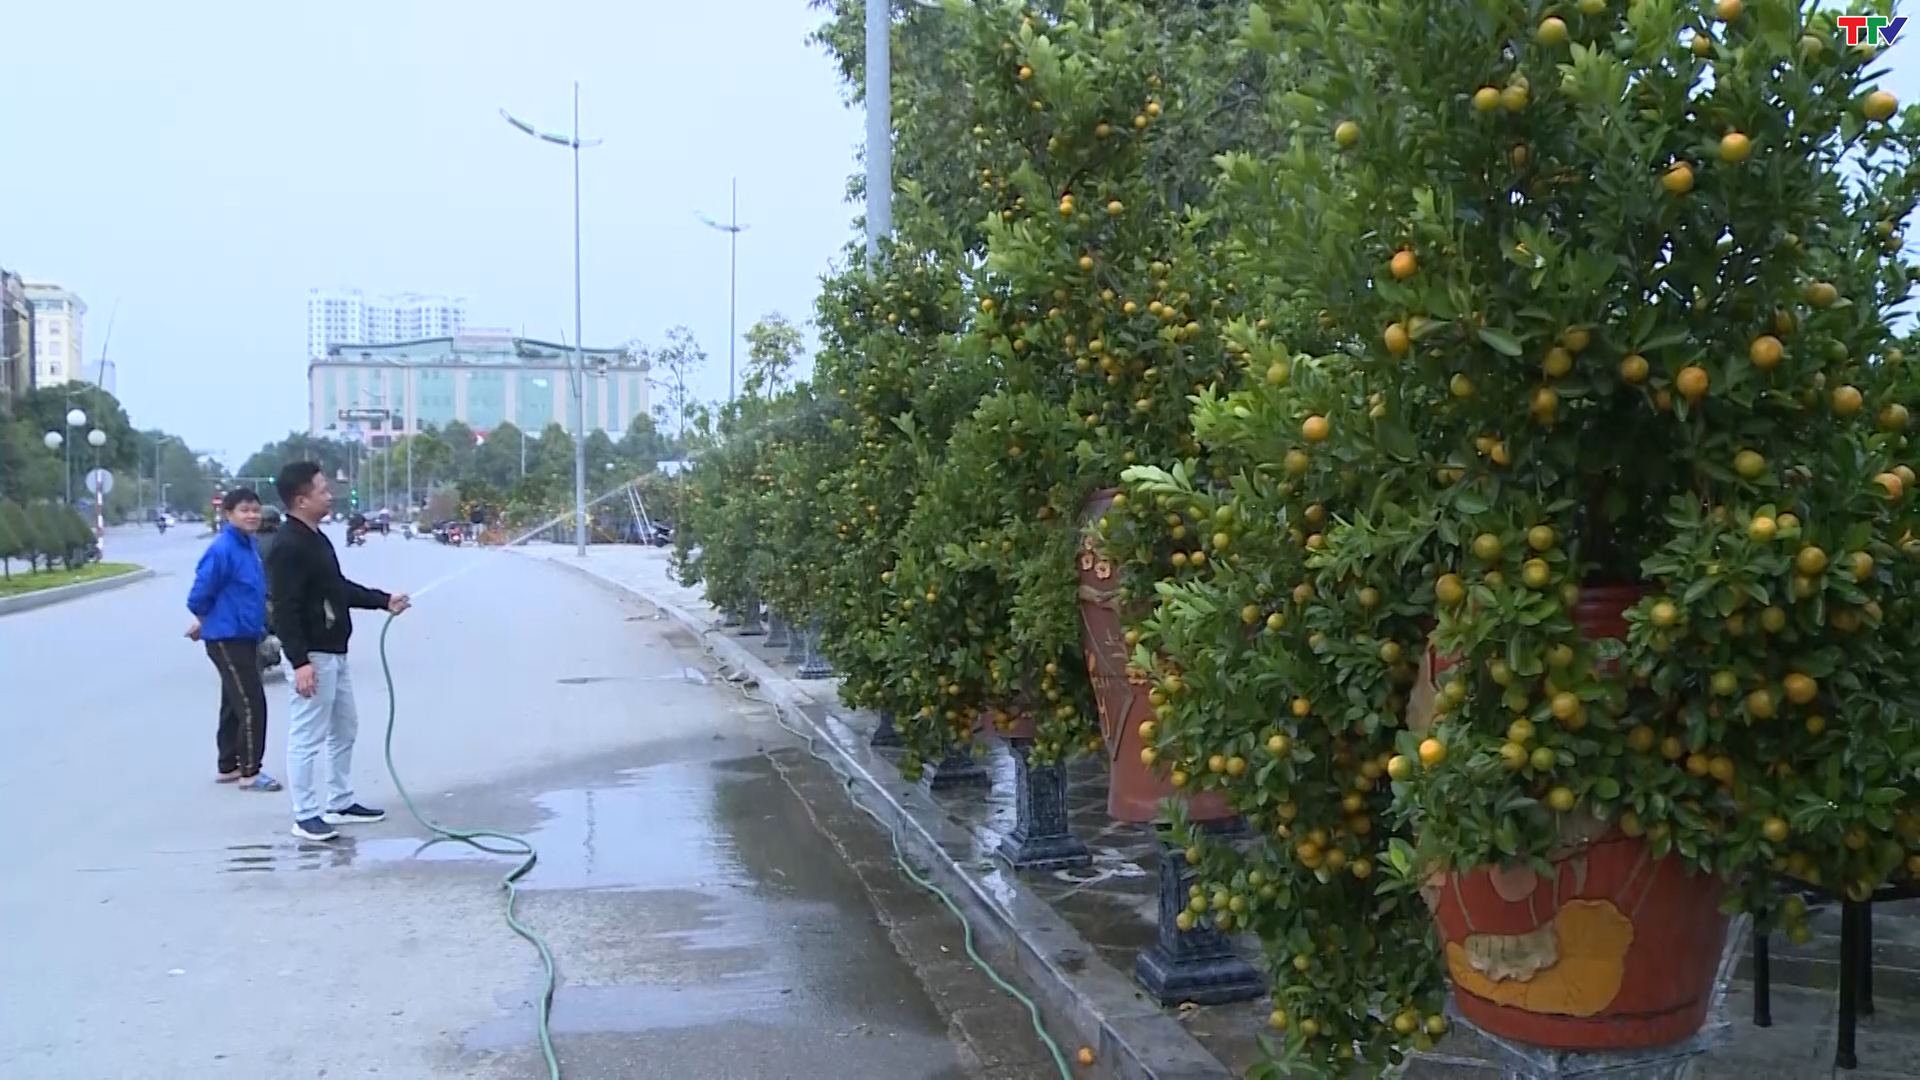 Thành phố Thanh Hóa tổ chức 24 điểm bán hoa, cây cảnh, phục vụ Tết Nguyên đán - Ảnh 2.